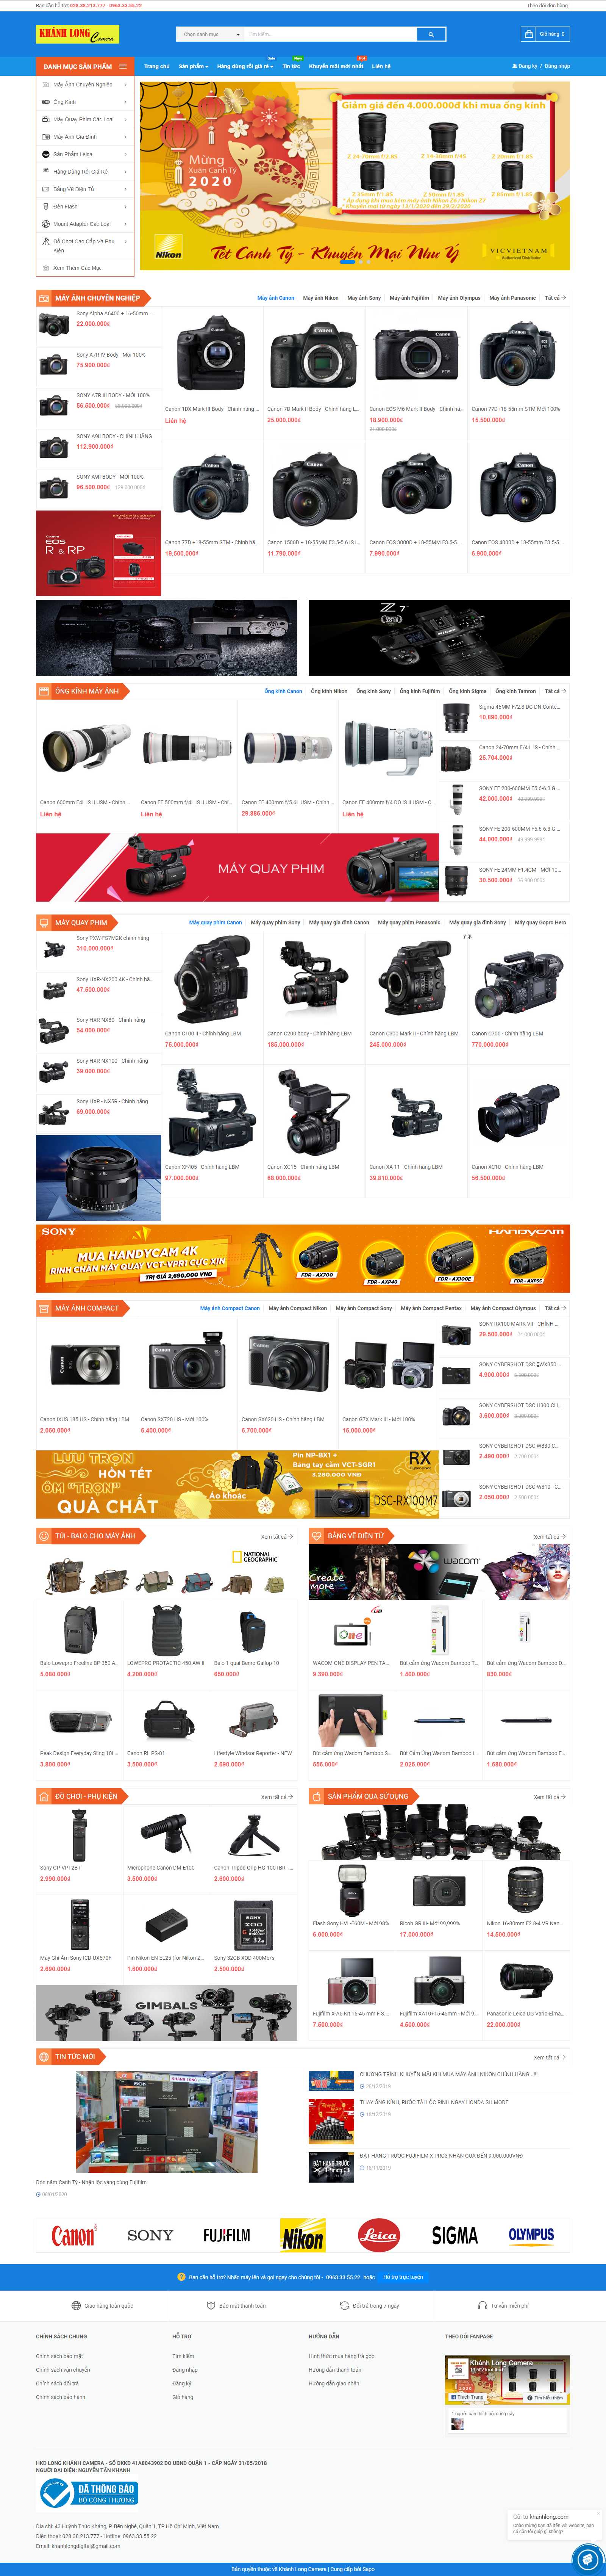 Thiết kế Website bán máy ảnh - khanhlong.com